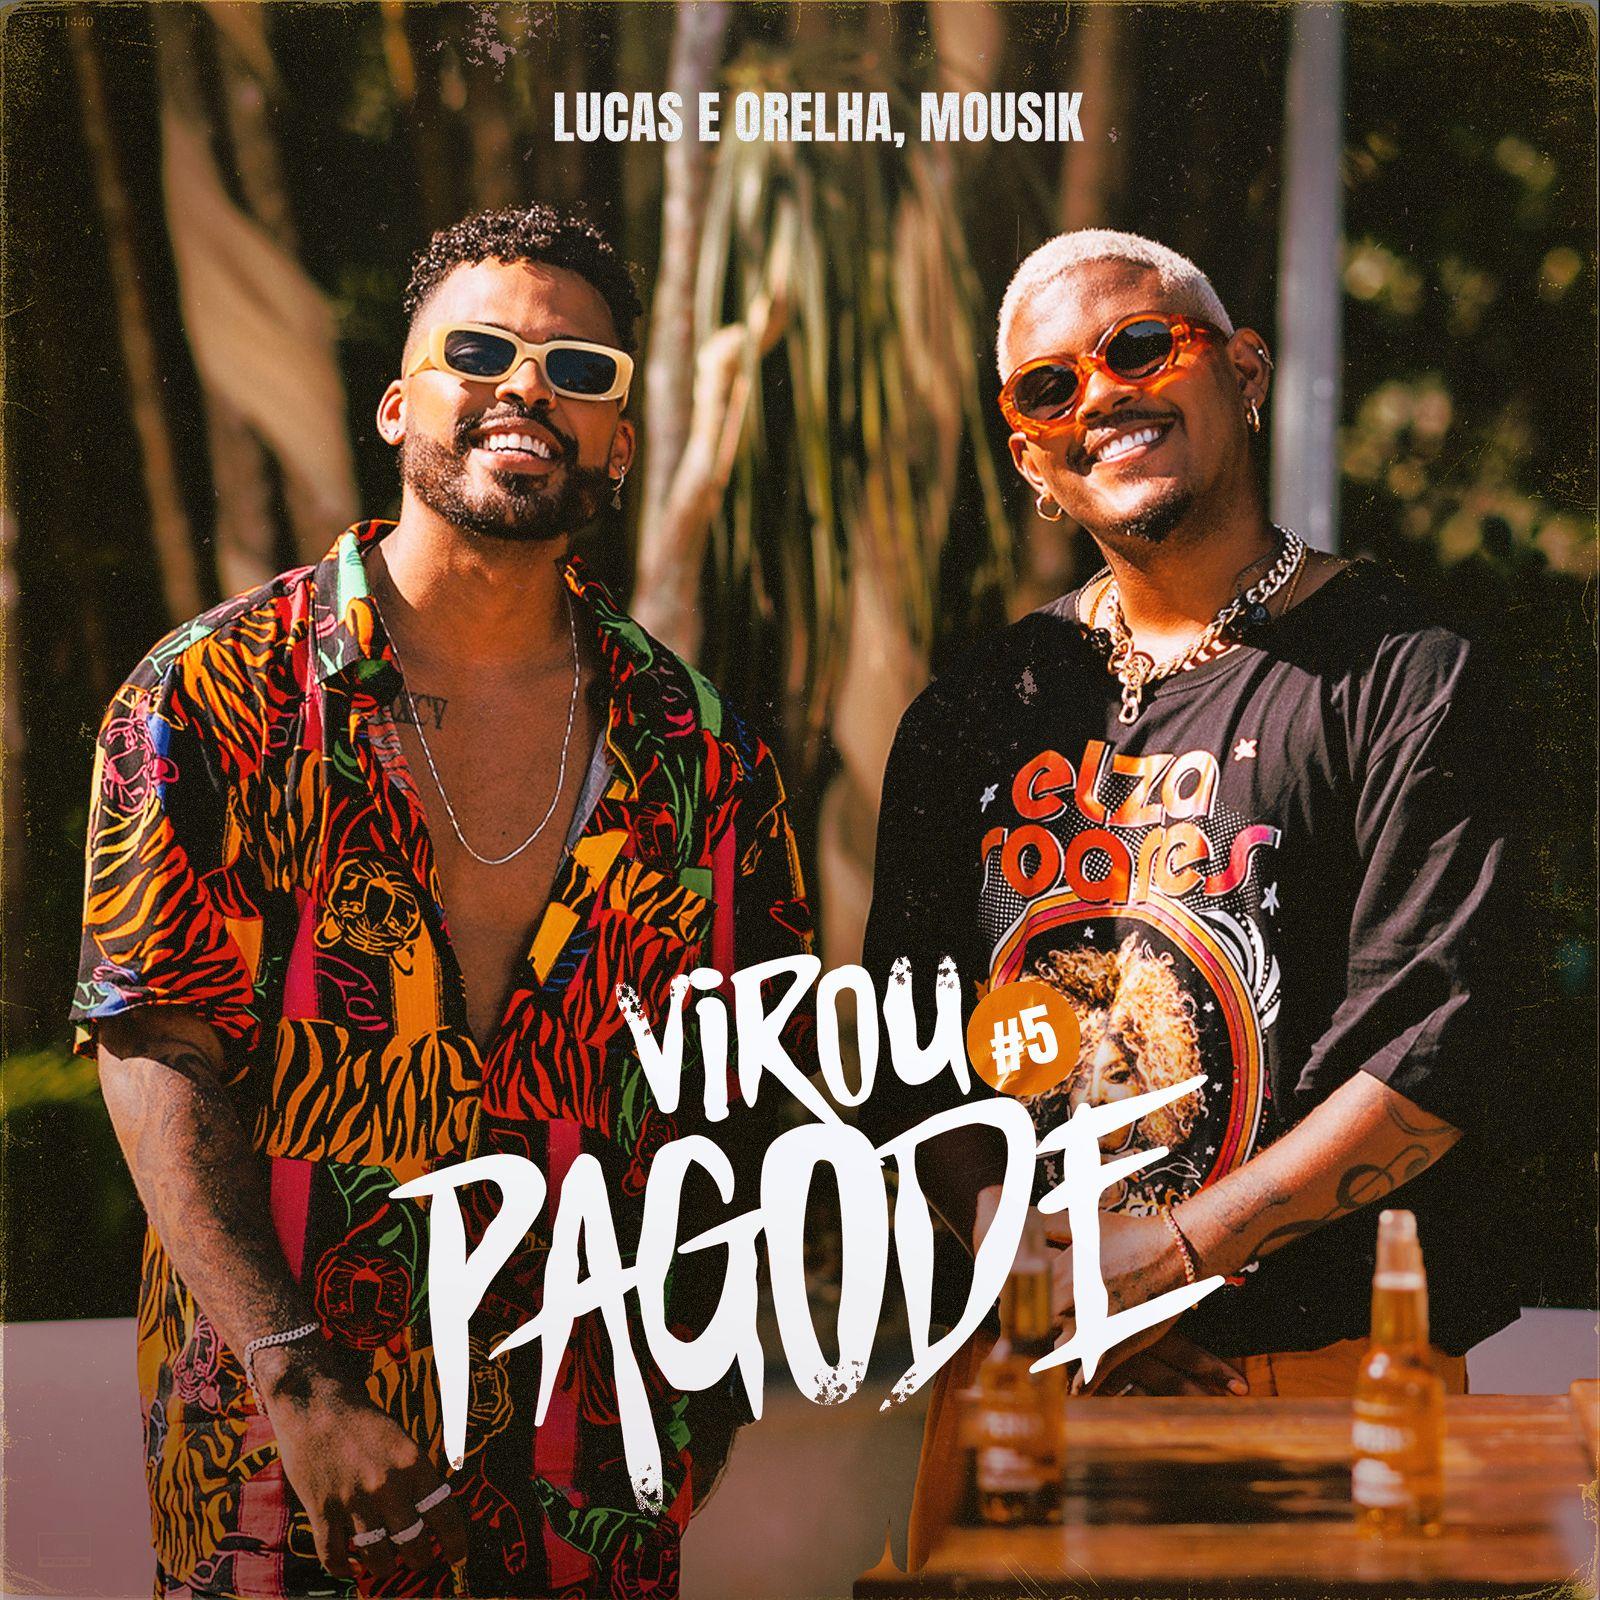 Projeto “Virou Pagode” Alcança Sua Quinta Edição com Novo EP de Lucas e Orelha